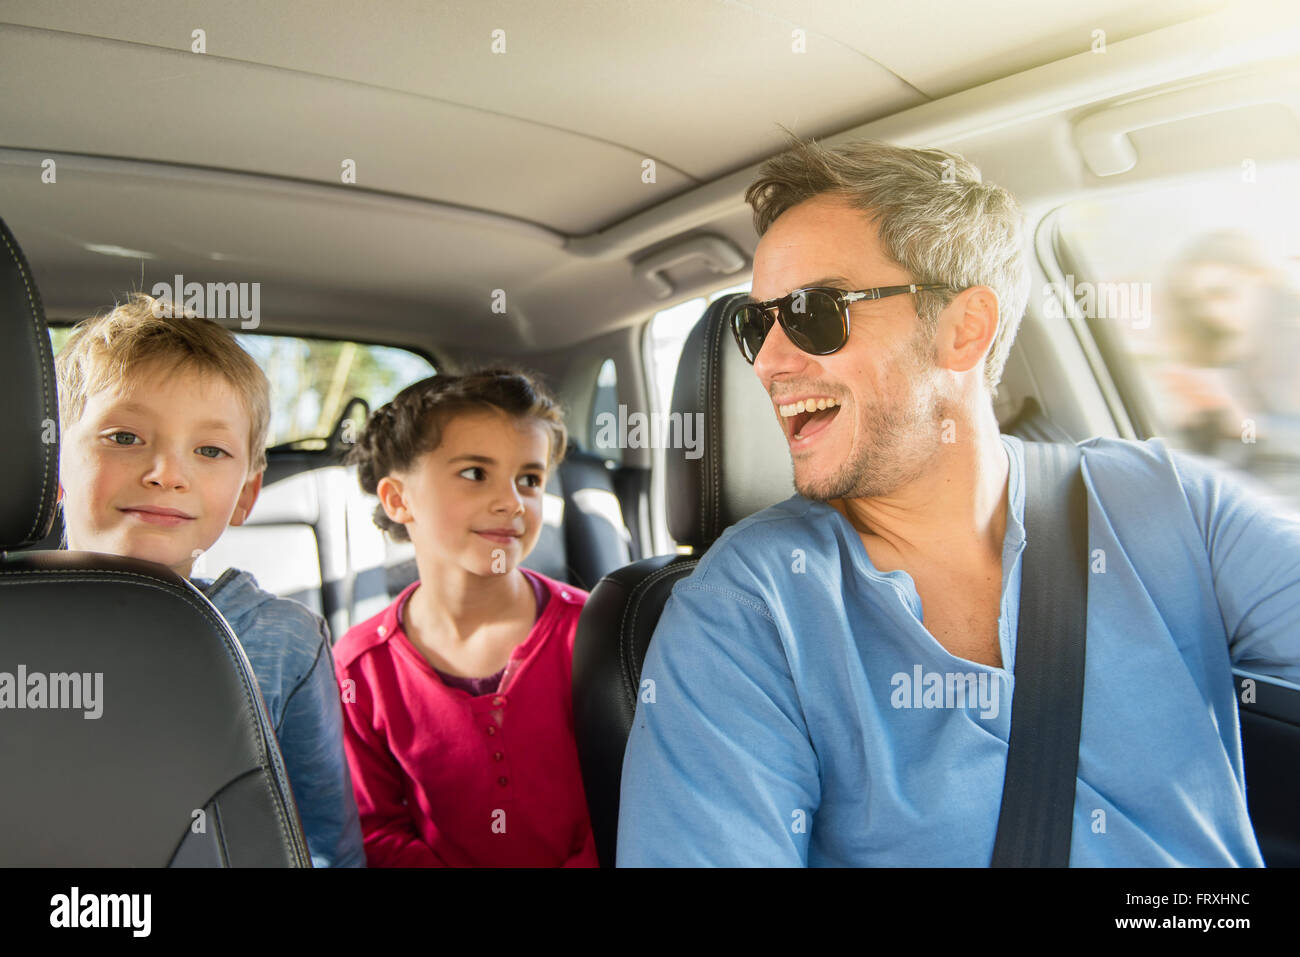 С отцом мы едем. Семья за рулем. Автомобиль семьям с детьми. Машина для путешествий семьей. Семья с автомобилем.